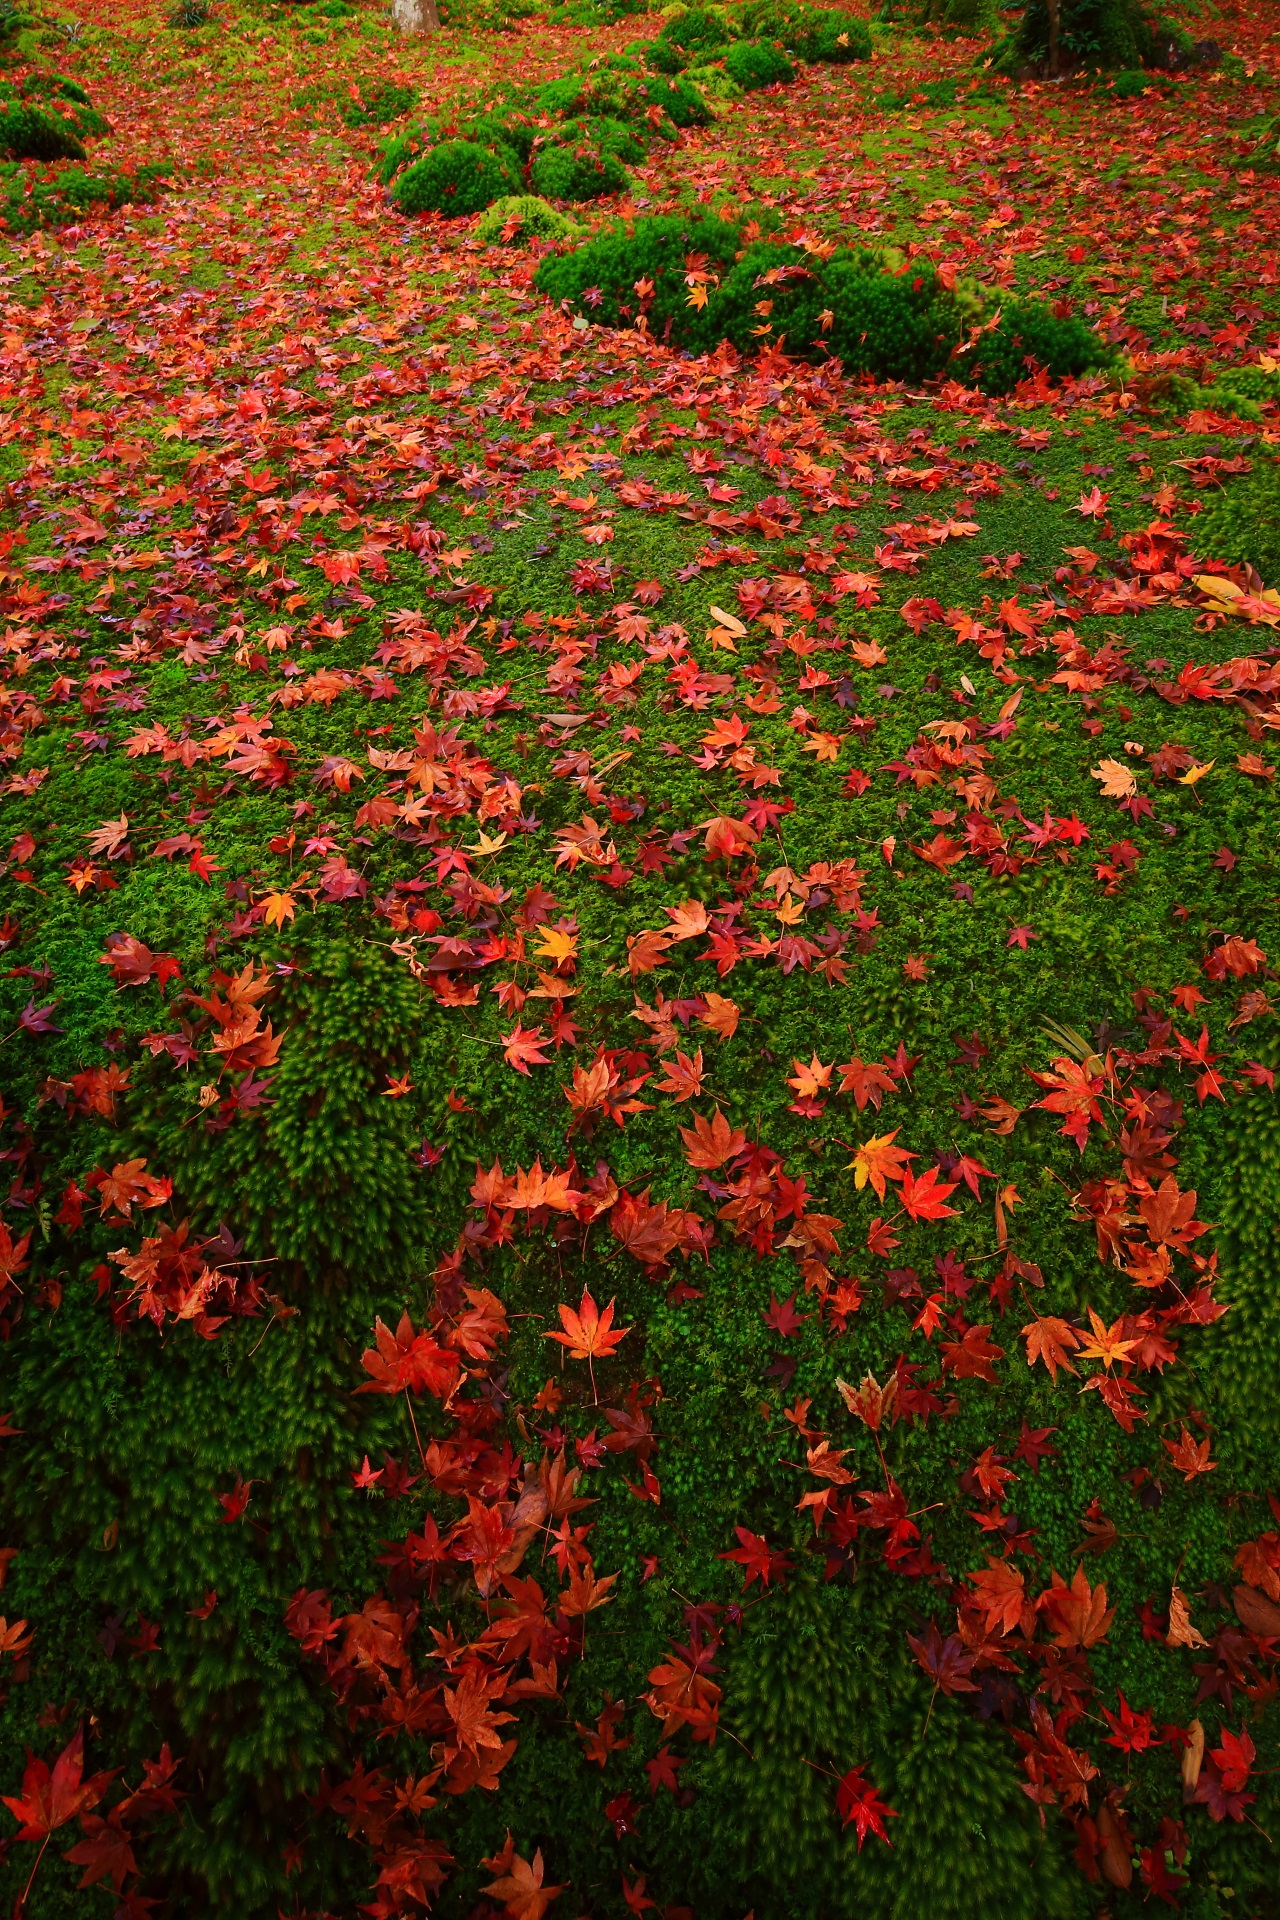 雨で潤った苔庭の絶品の散り紅葉